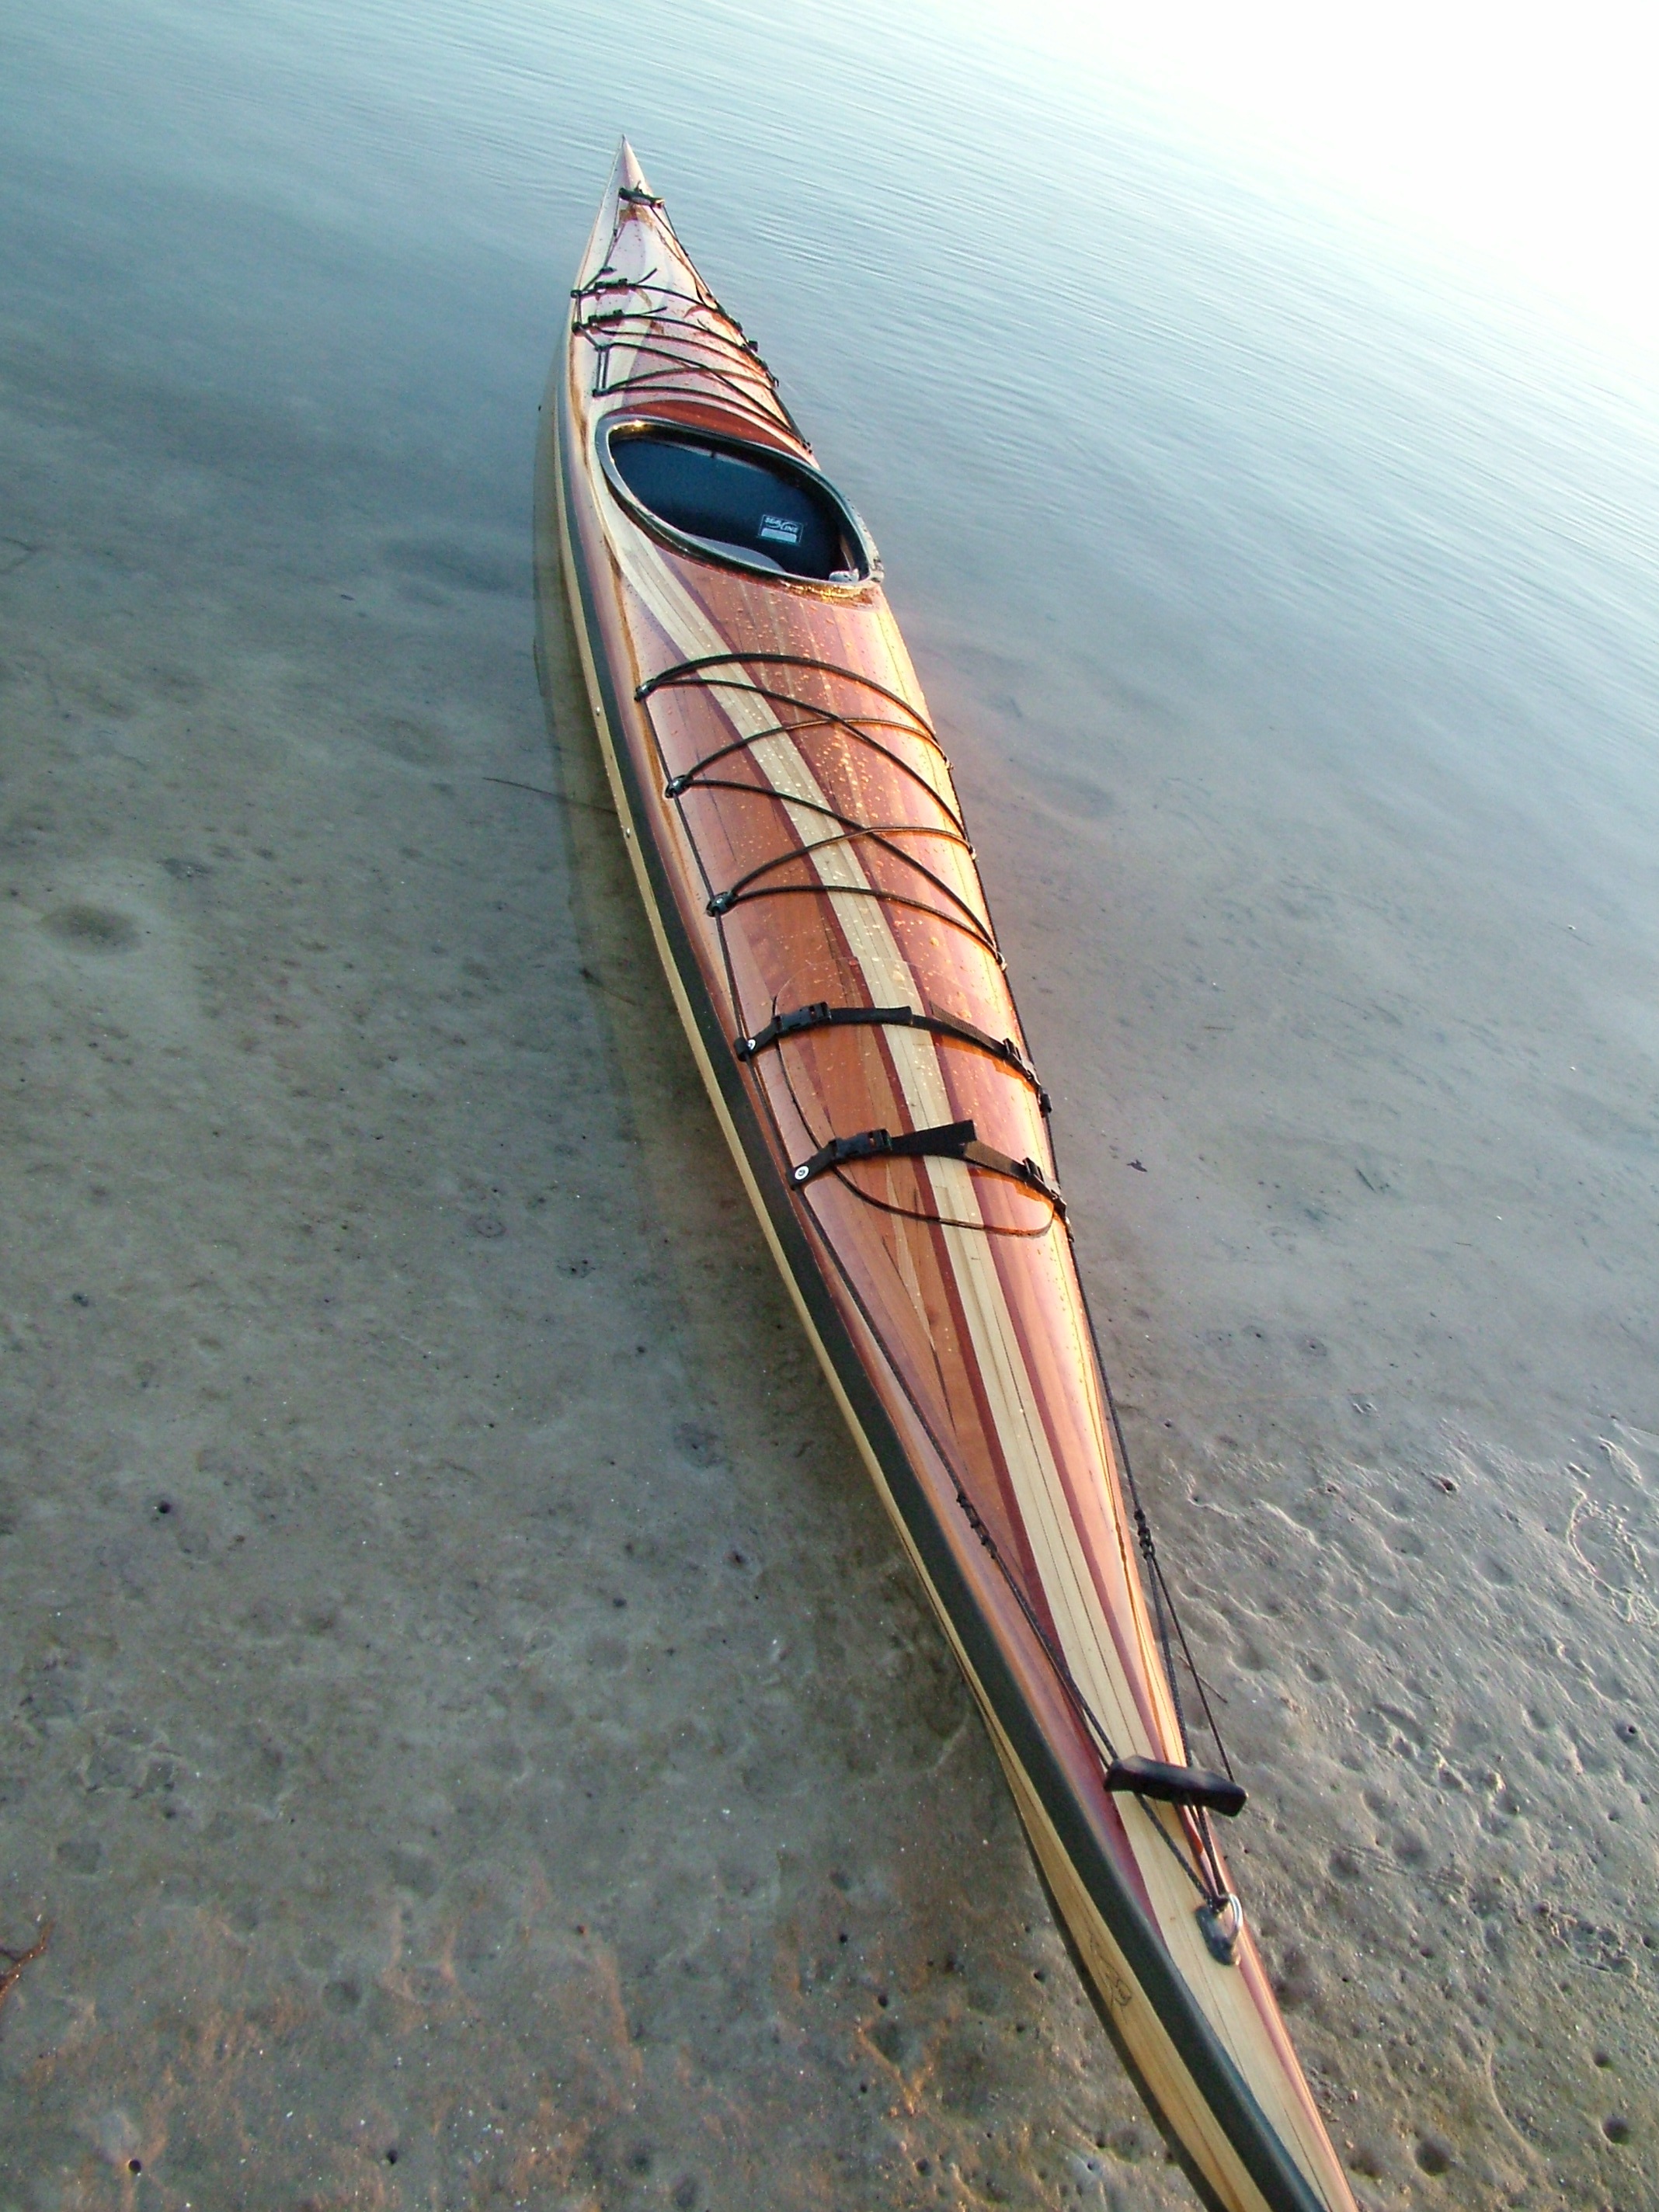 My First Wood Strip Kayak | Kayakkev's Blog